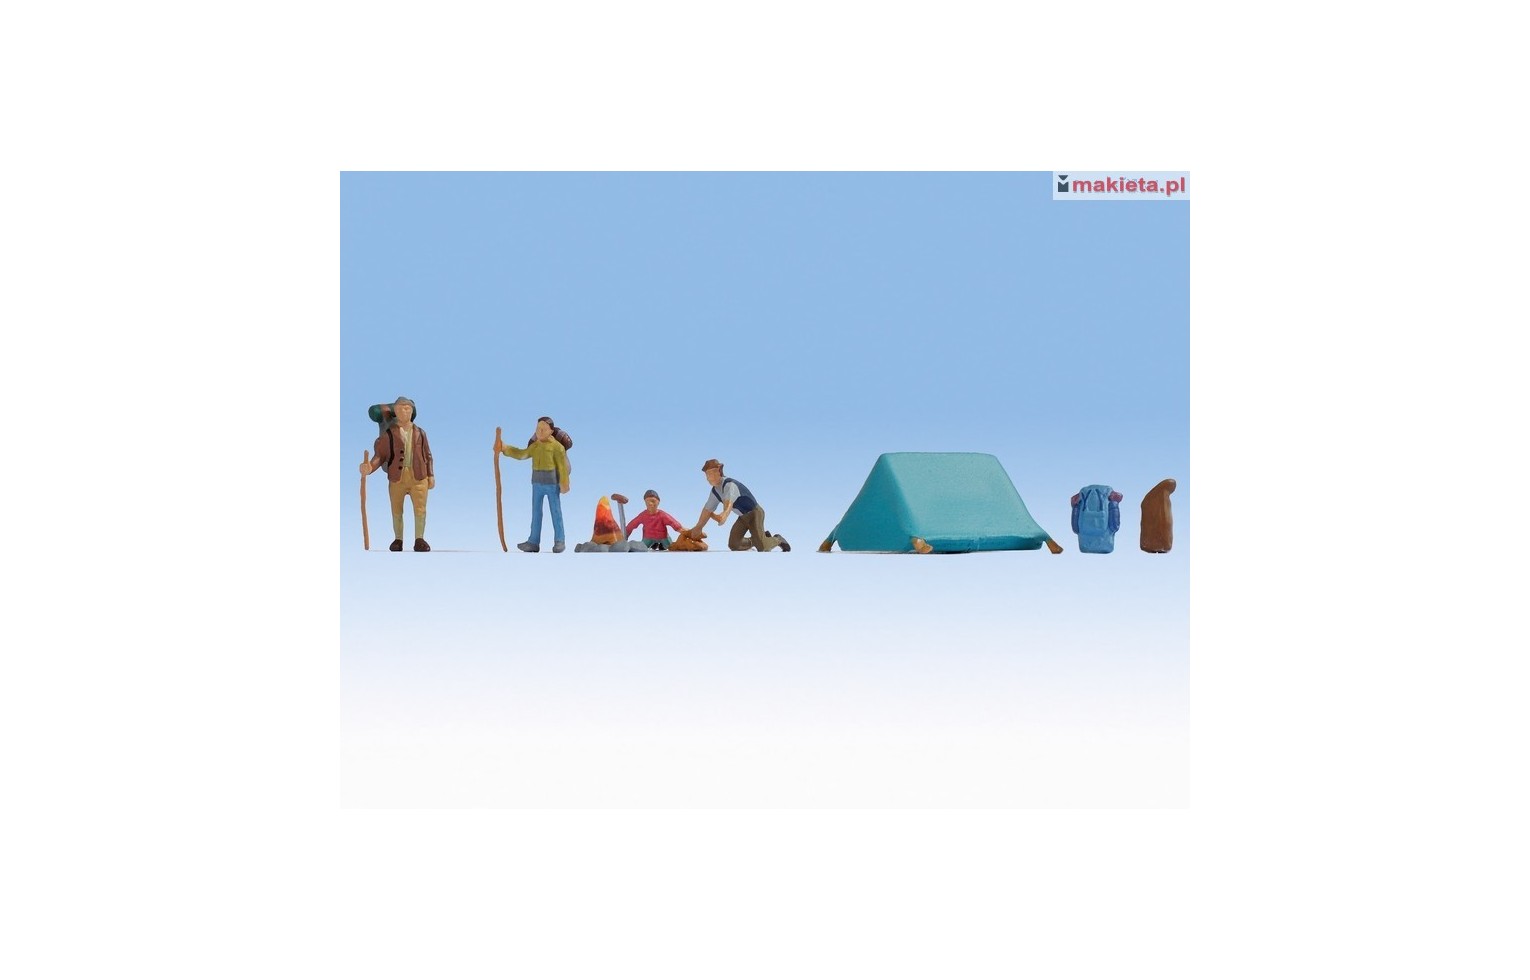 NOCH 45876. Camping, na kempingu, figurki i akcesoria w skali TT.